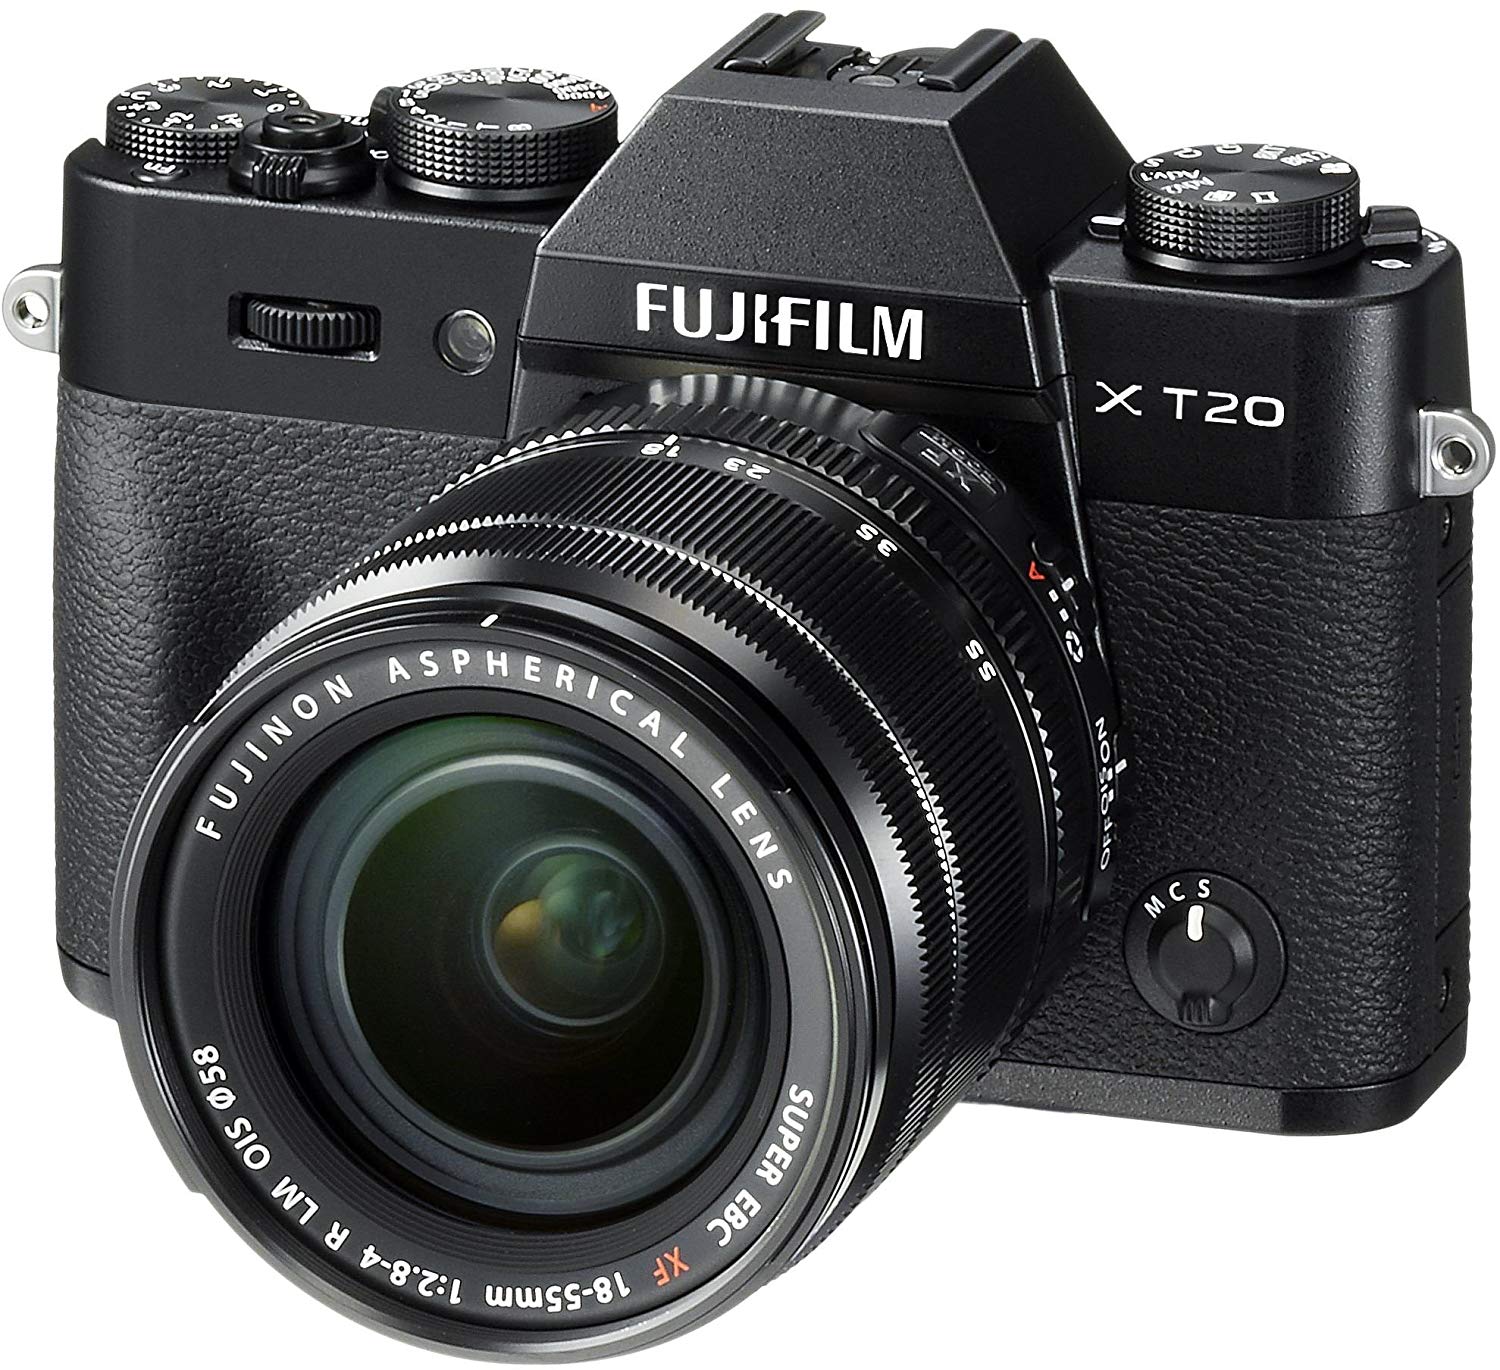 Fujifilm X-T20 беззеркальная цифровая камера с объективом XF18-55mmF2.8-4.0 R LM OIS - черный